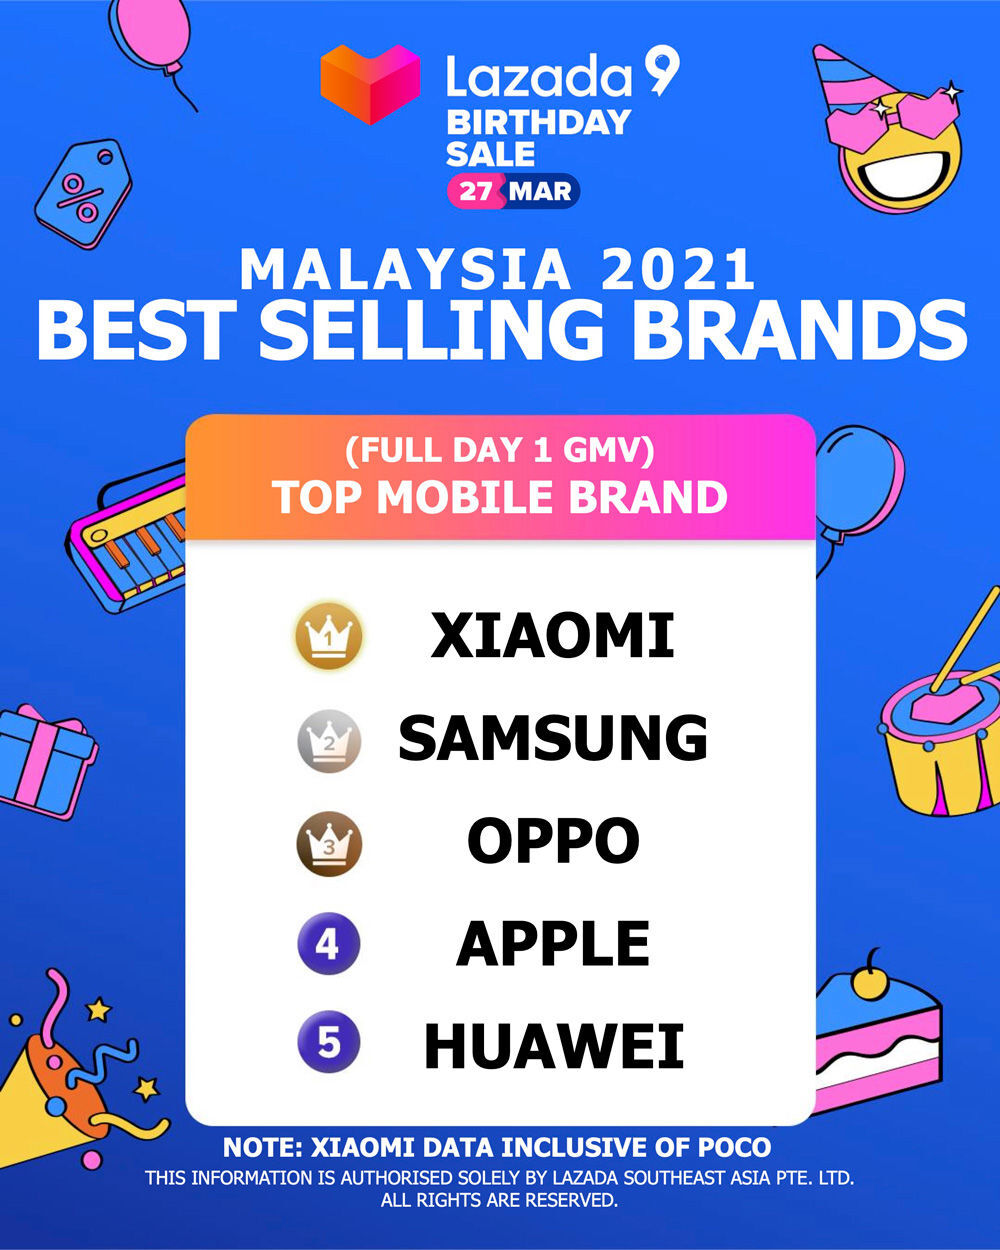 Xiaomi Malaysia Lazada Birthday Sale